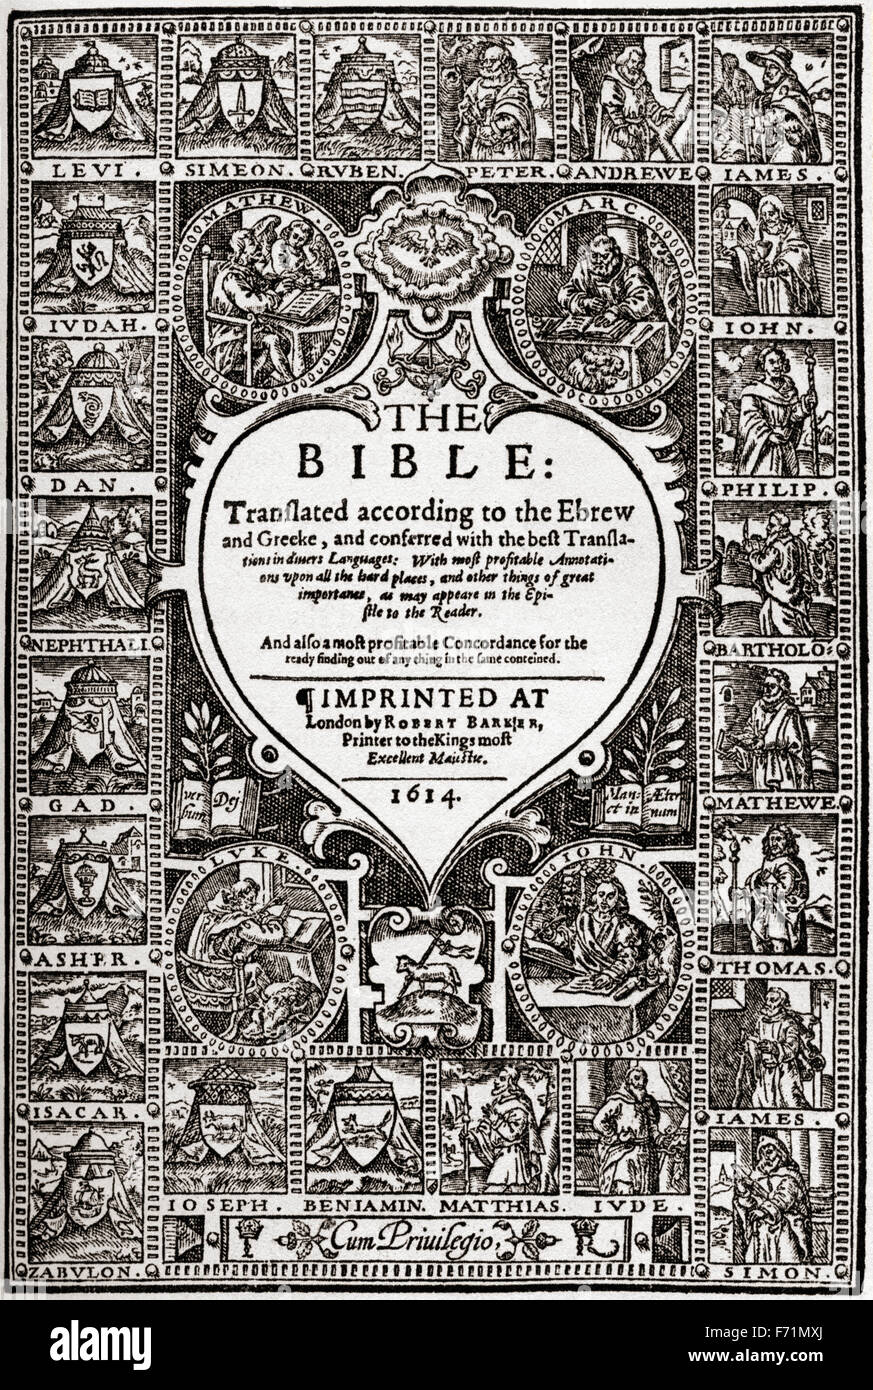 Página del título de la Biblia de ginebra del siglo XVI, después de una reimpresión inglesa de 1614. Foto de stock